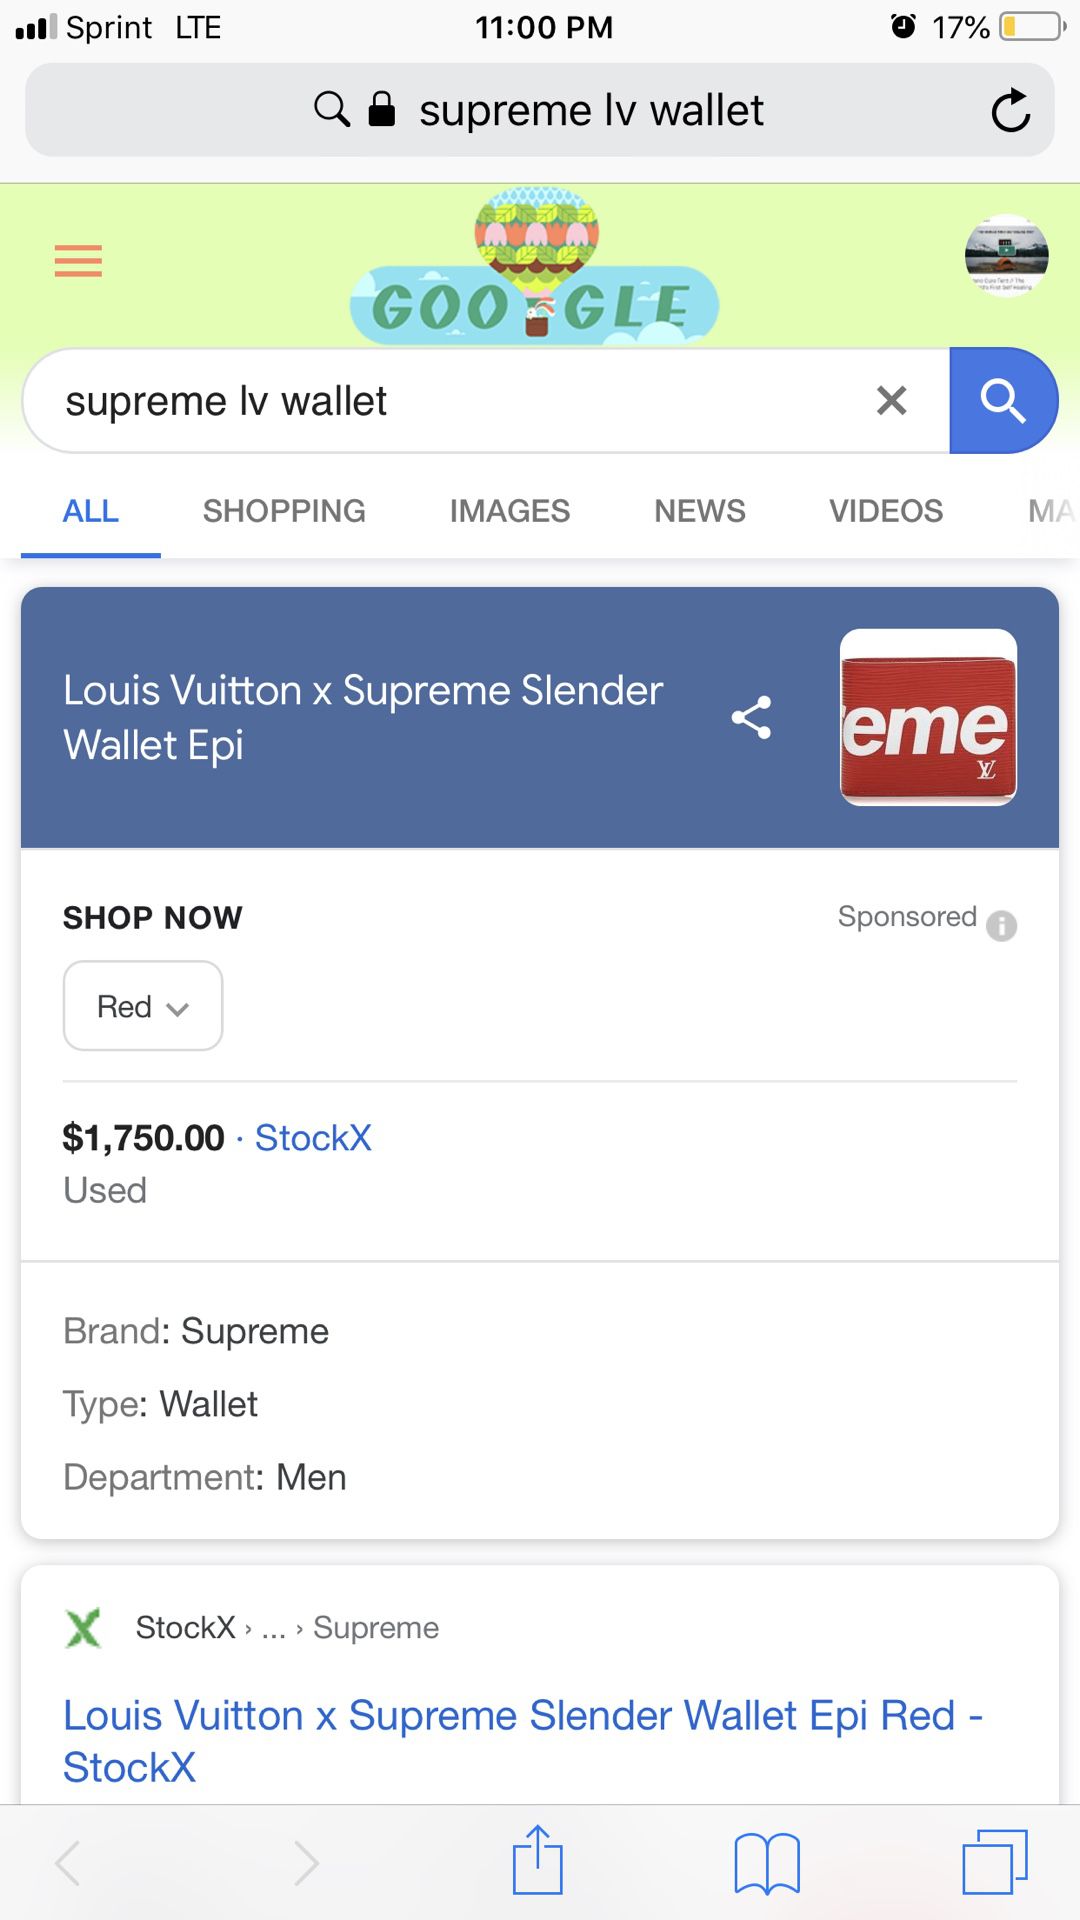 Louis Vuitton x Supreme Slender Wallet Epi